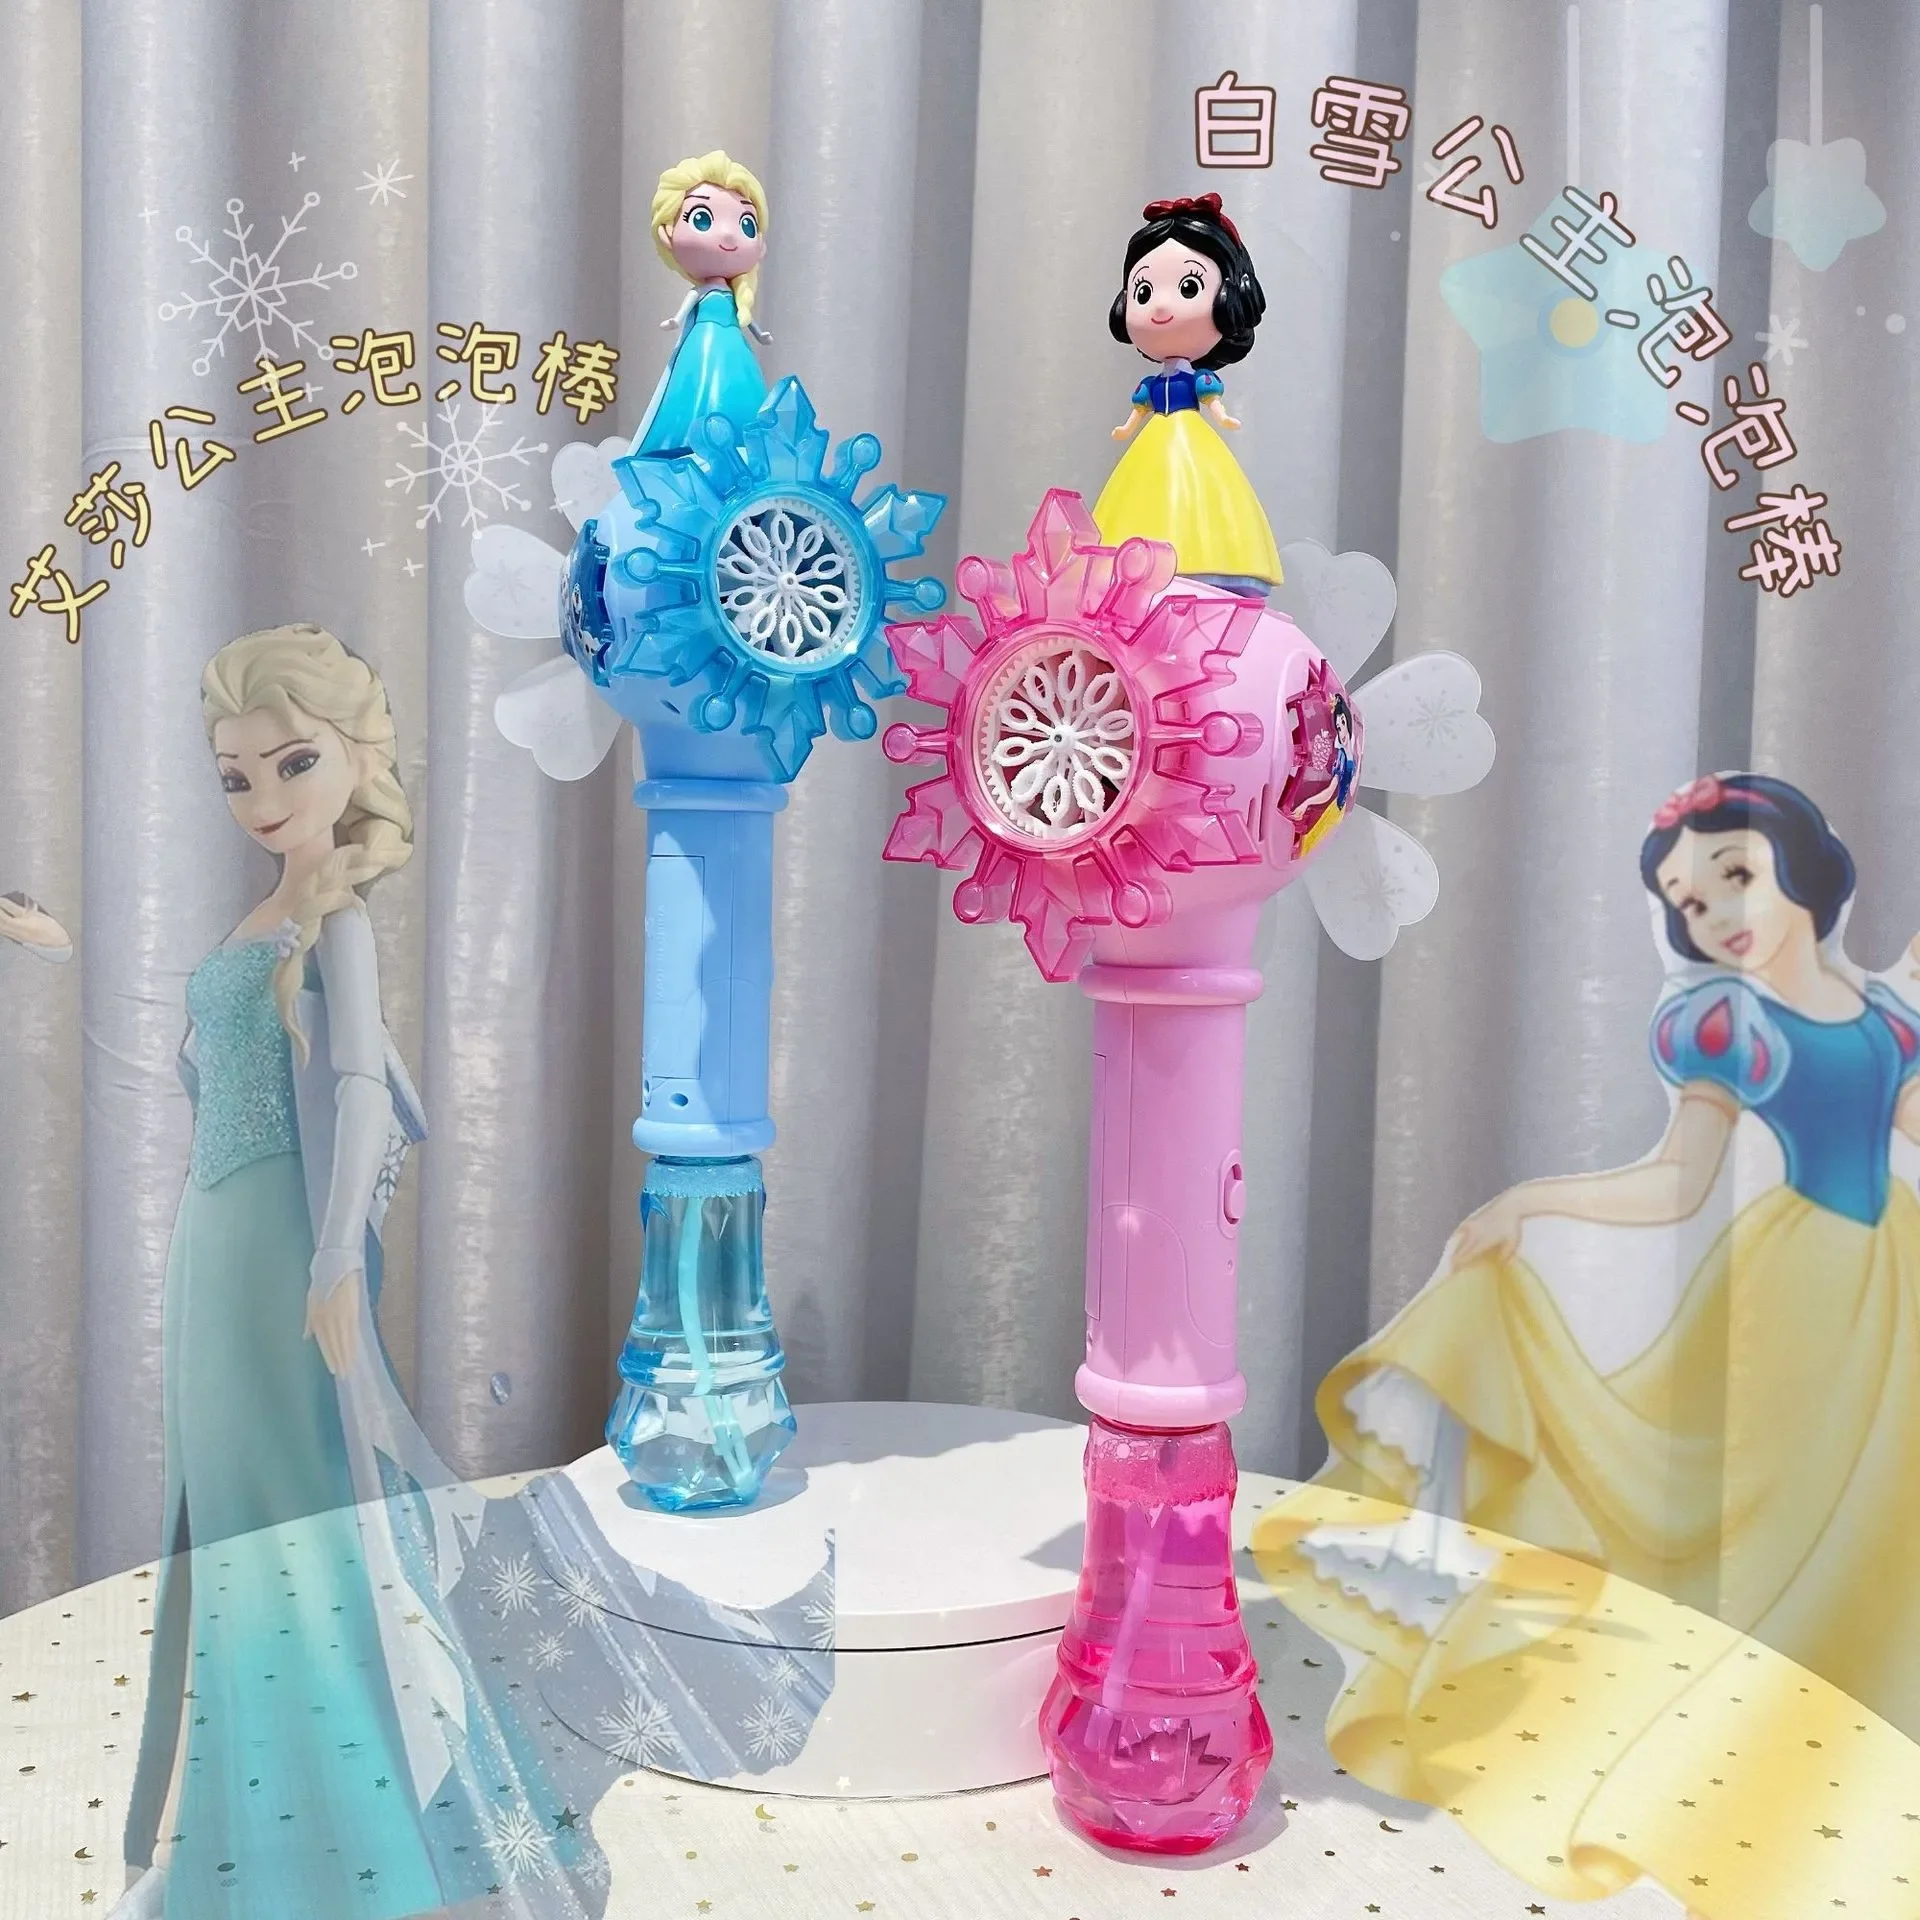 Disney Frozen Elsa Princess Snow White  Magic Windmill Bubbles kids Educational Action Figures Toy